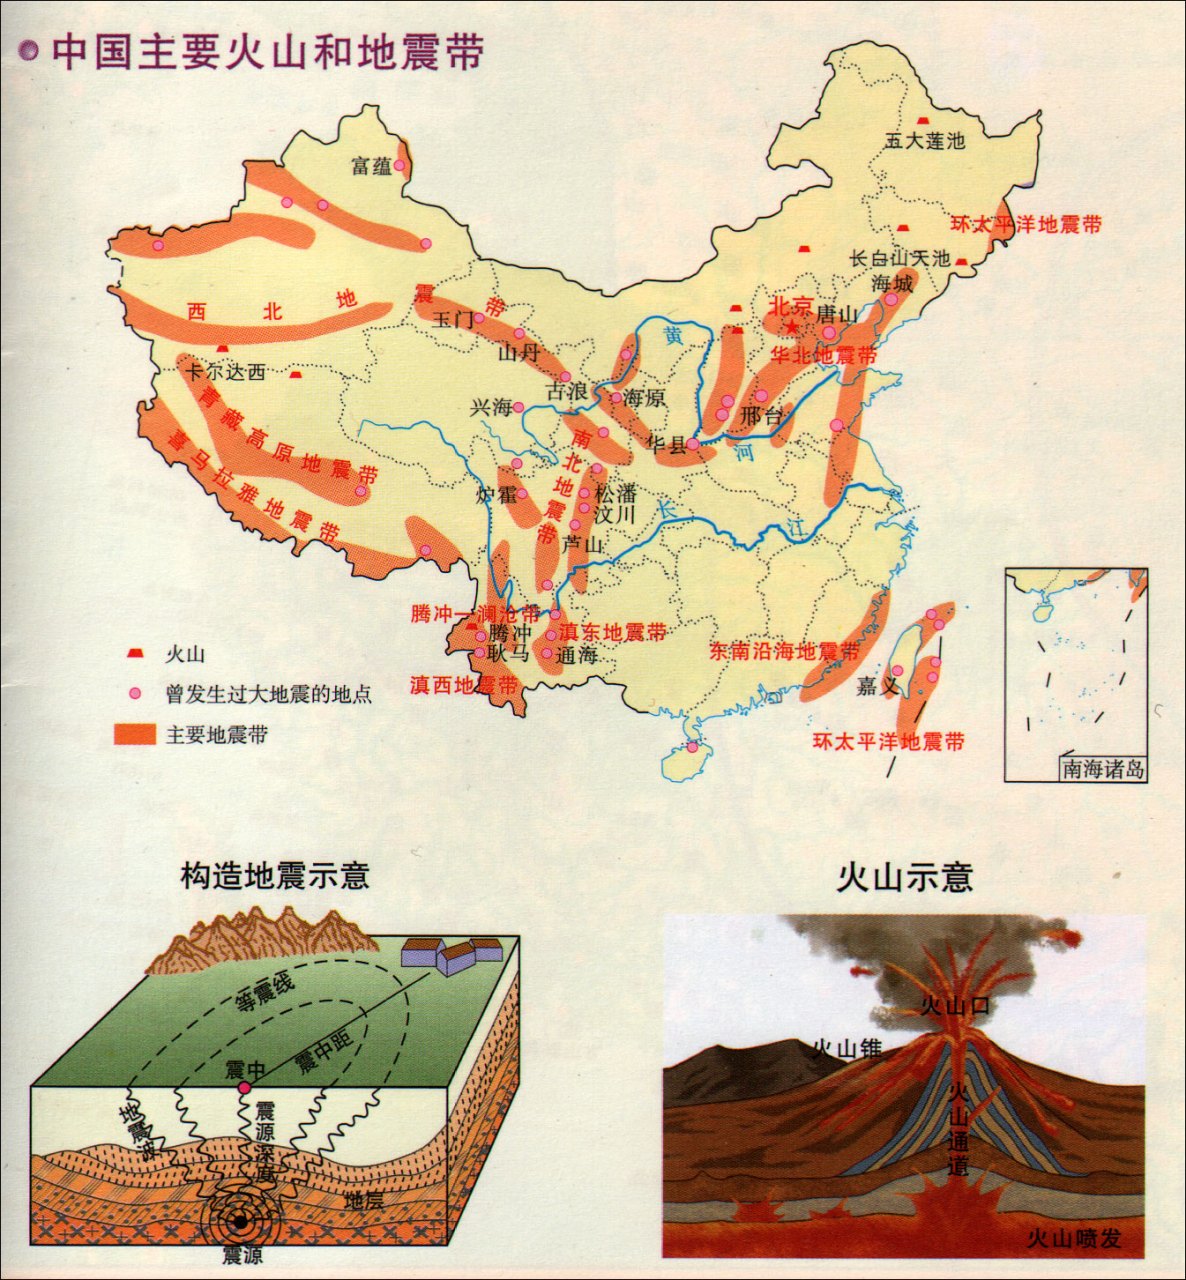 中国主要火山地震带分布图